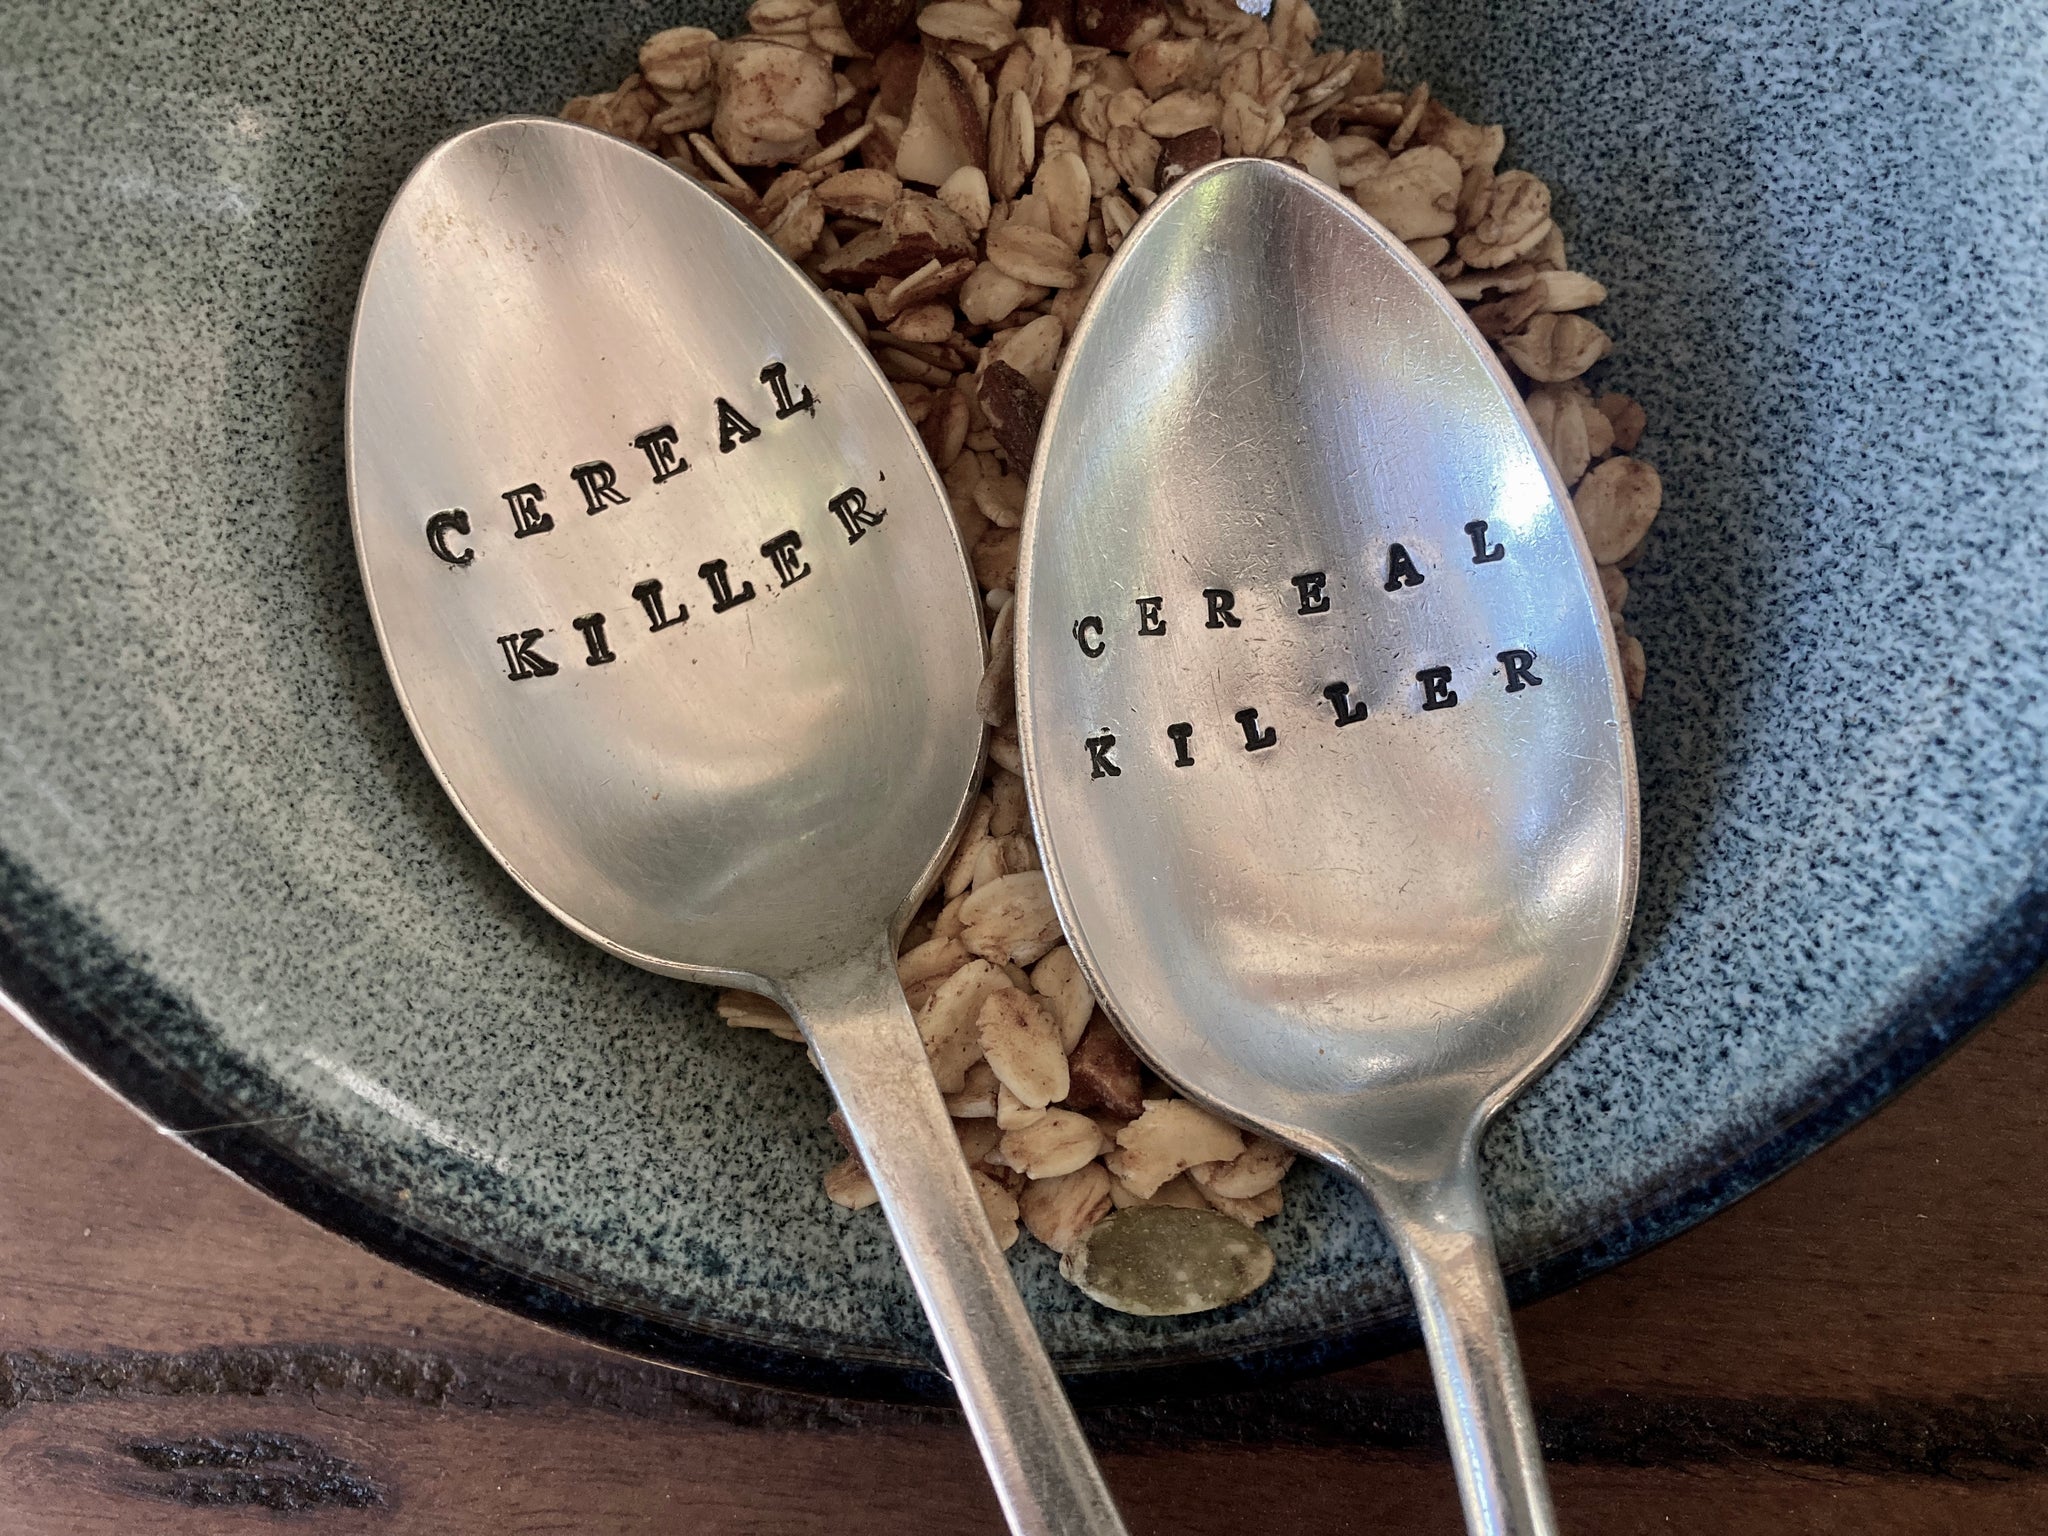 Cereal Killer - letter-stamped vintage spoon